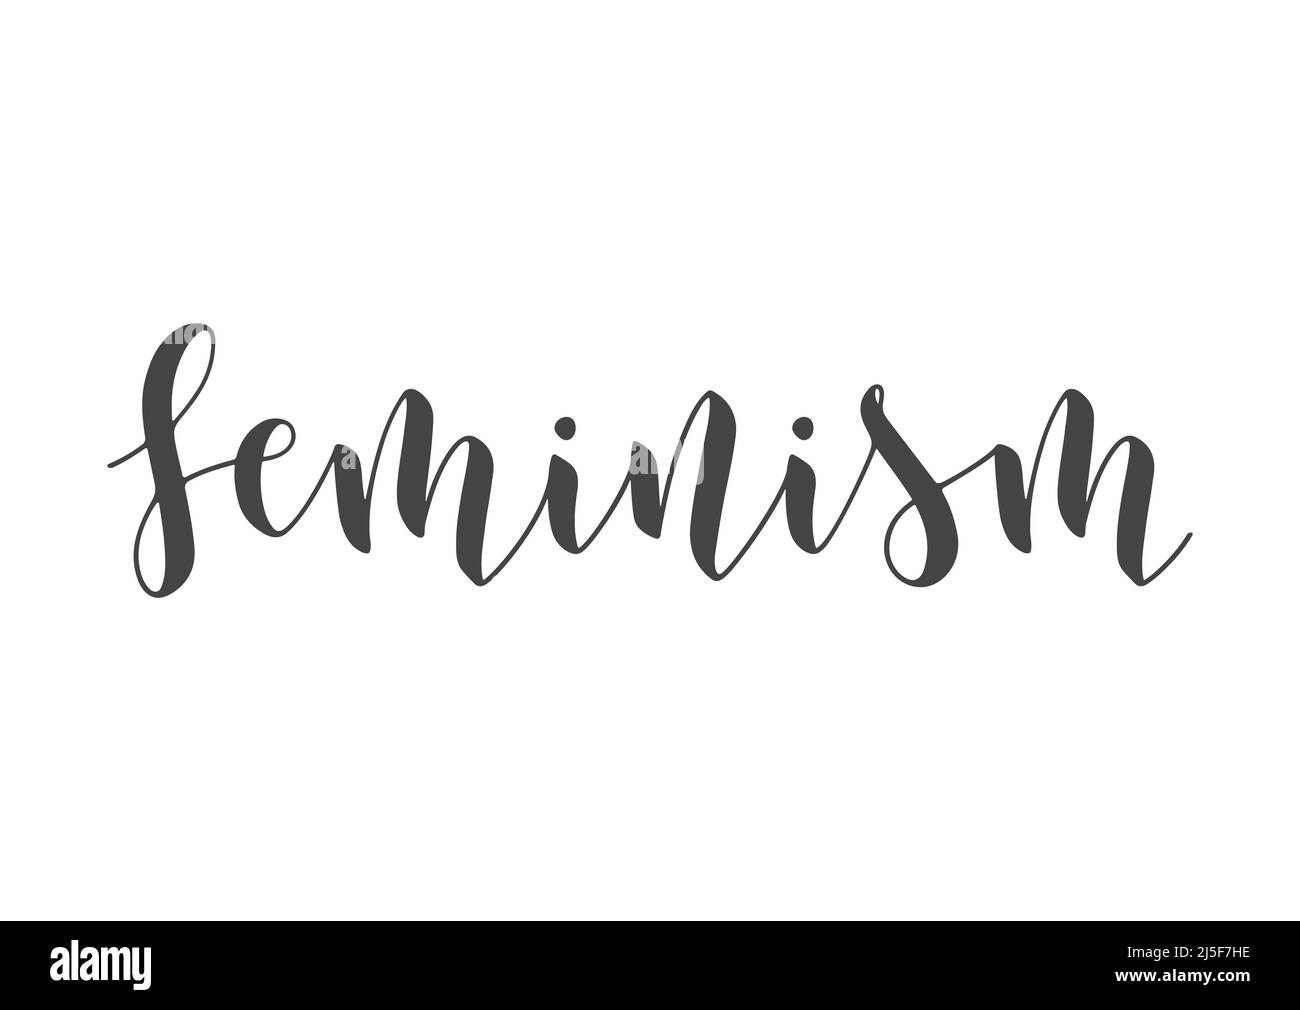 Vektorgrafik. Handgeschriebene Schriftzüge des Feminismus. Vorlage für Karte, Etikett, Postkarte, Poster, Aufkleber, Print- oder Web-Produkt. Stock Vektor